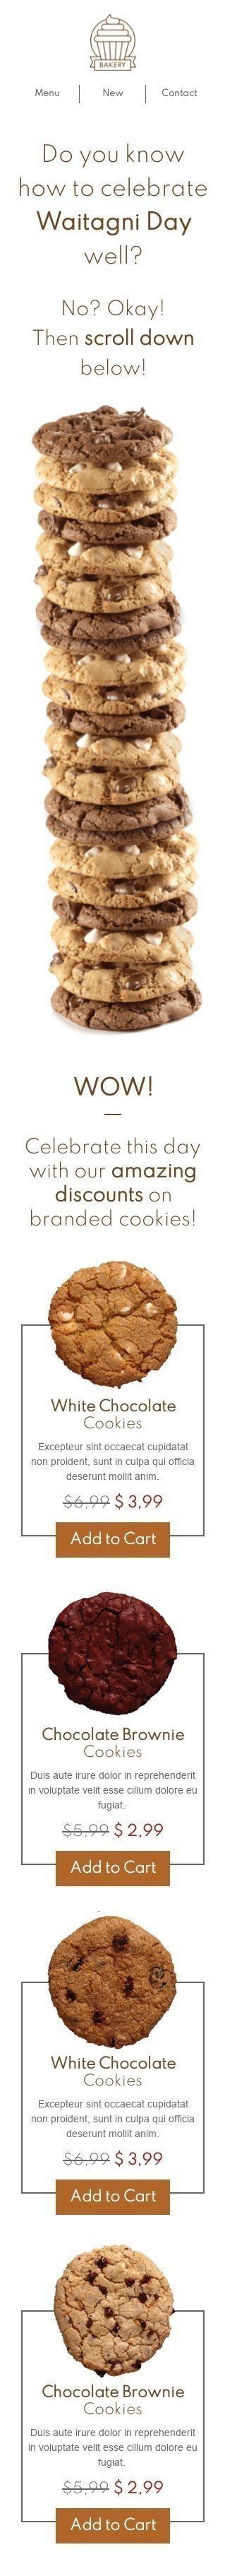 Plantilla de correo electrónico «Cookies de marca» de Día de Waitangi para la industria de Gastronomía Vista de móvil